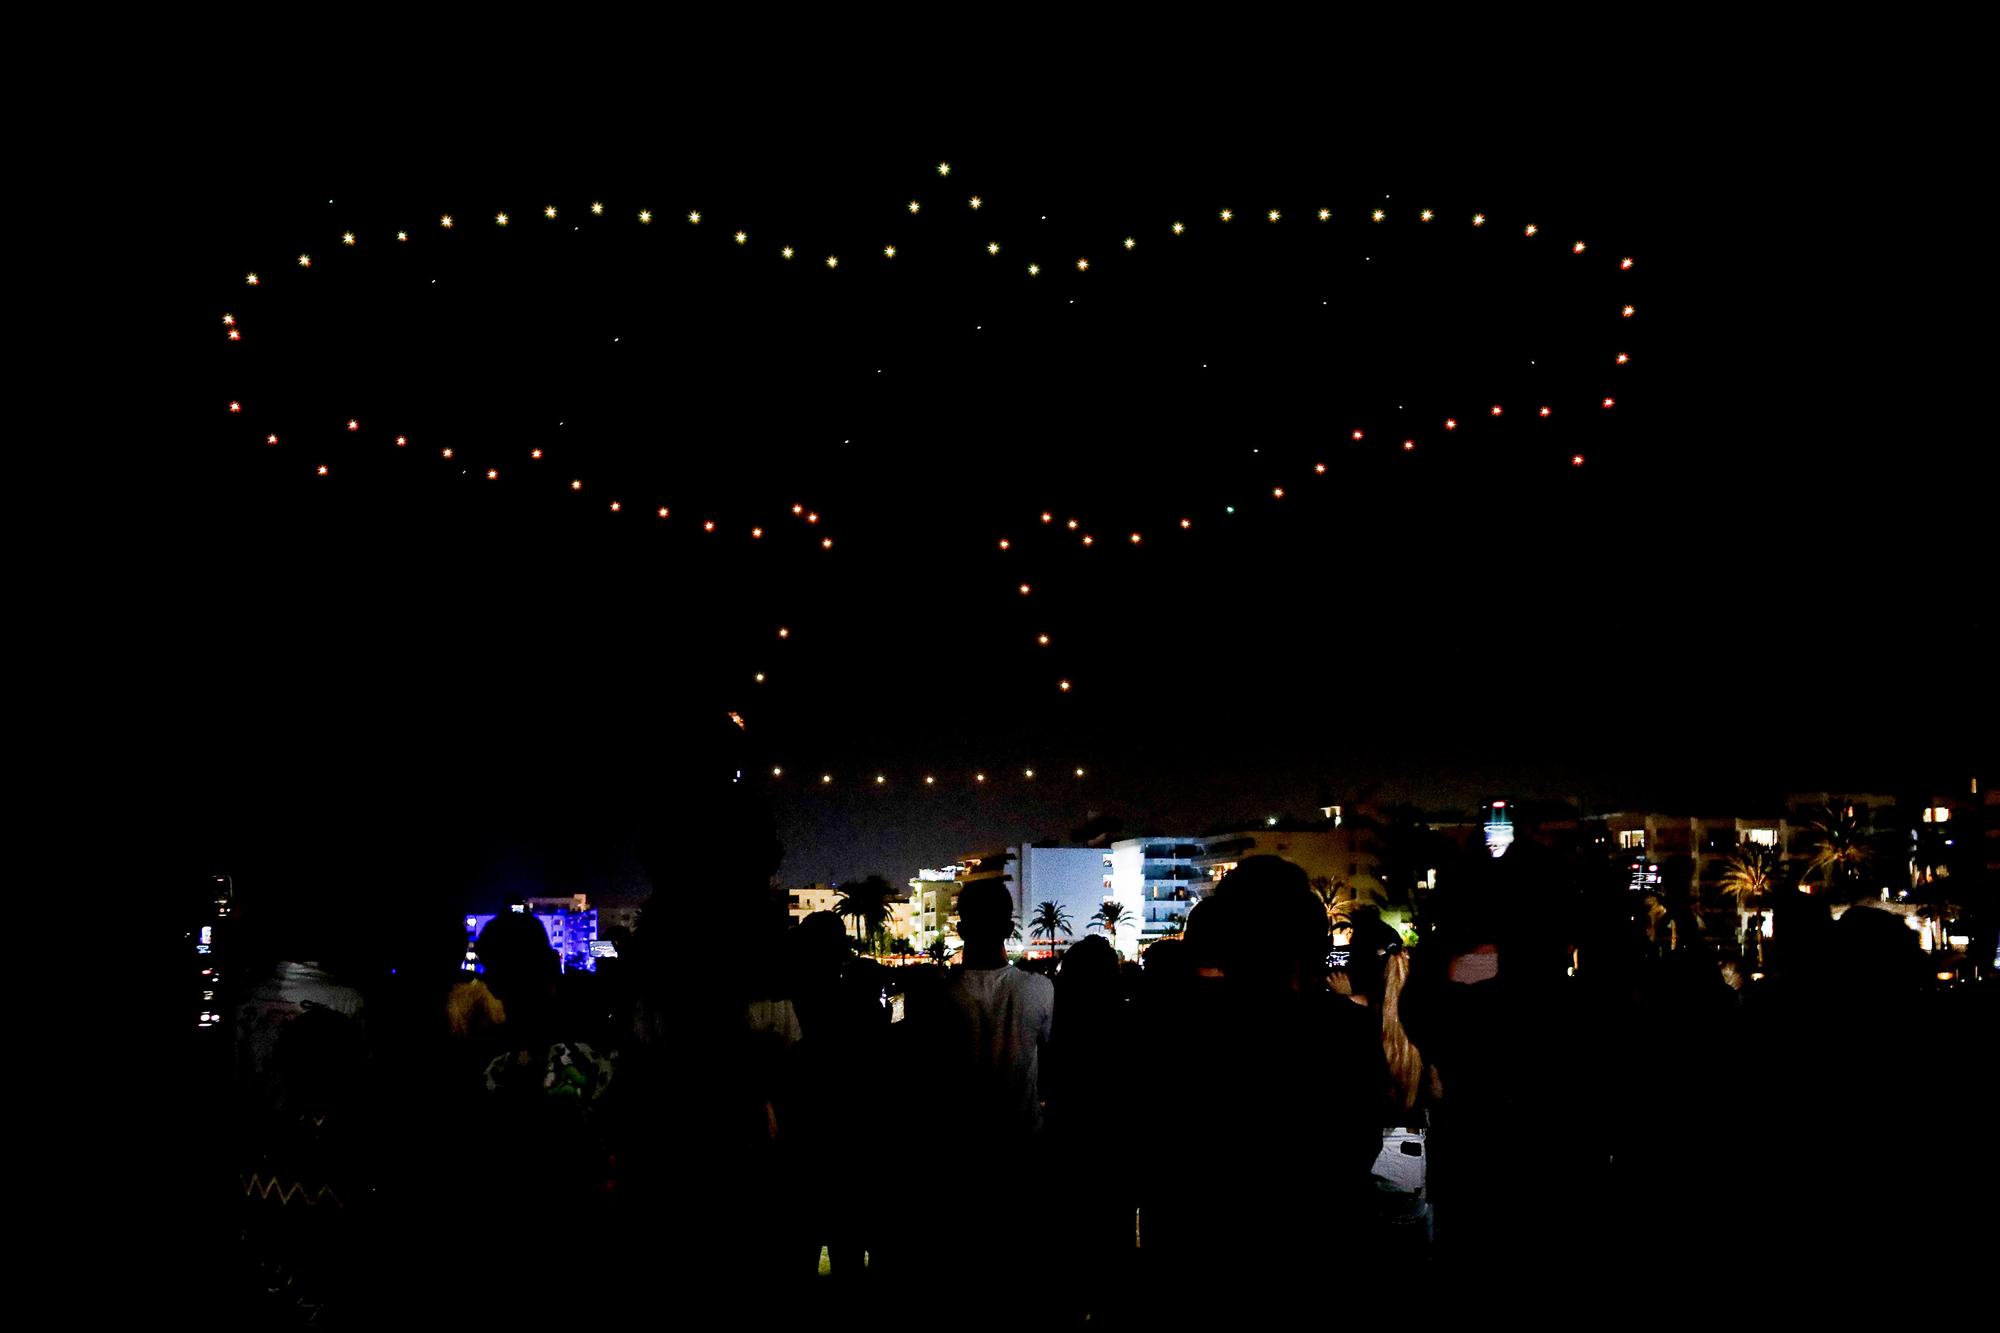 El espectáculo de drones de Ibiza, en imágenes - Diario de Ibiza